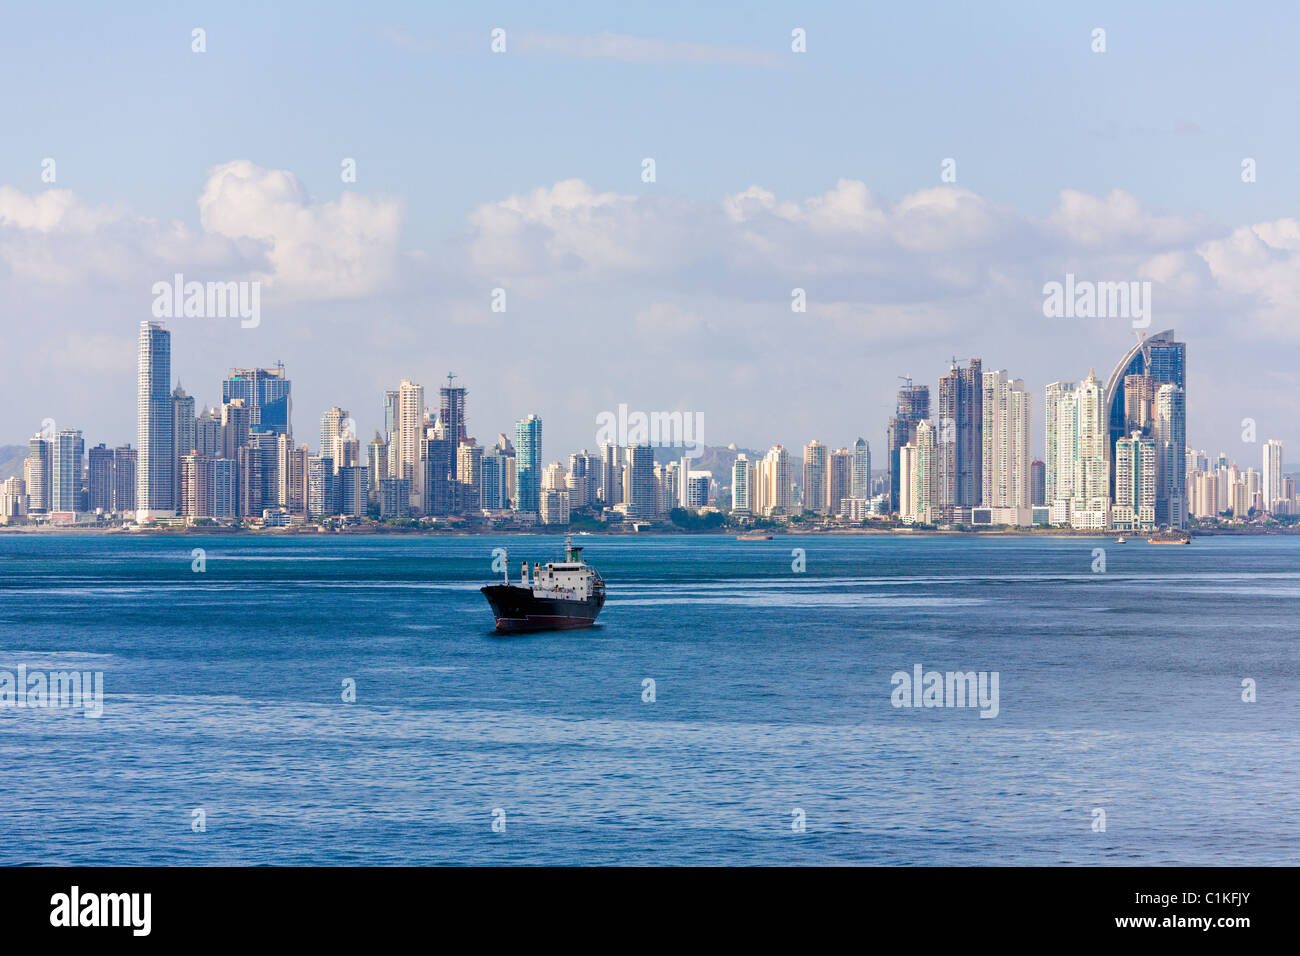 Panama City skyline, Panama Stock Photo